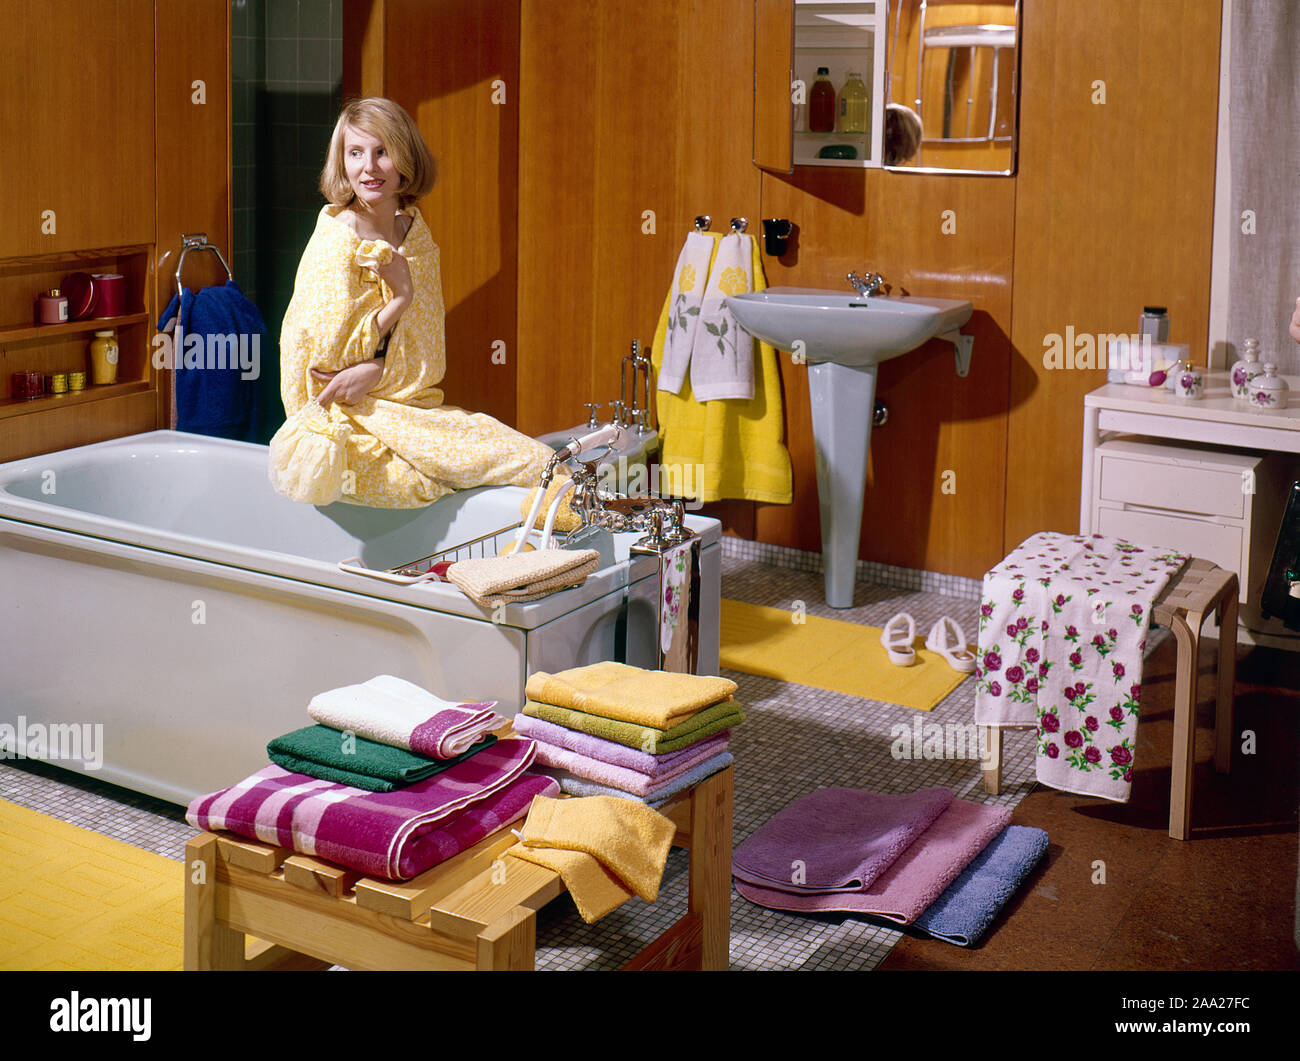 Badezimmer der 1960er Jahre. Eine junge Frau in einem typischen  eingerichtetes Badezimmer. Schweden 1963. Ref CV 3-1 Stockfotografie - Alamy